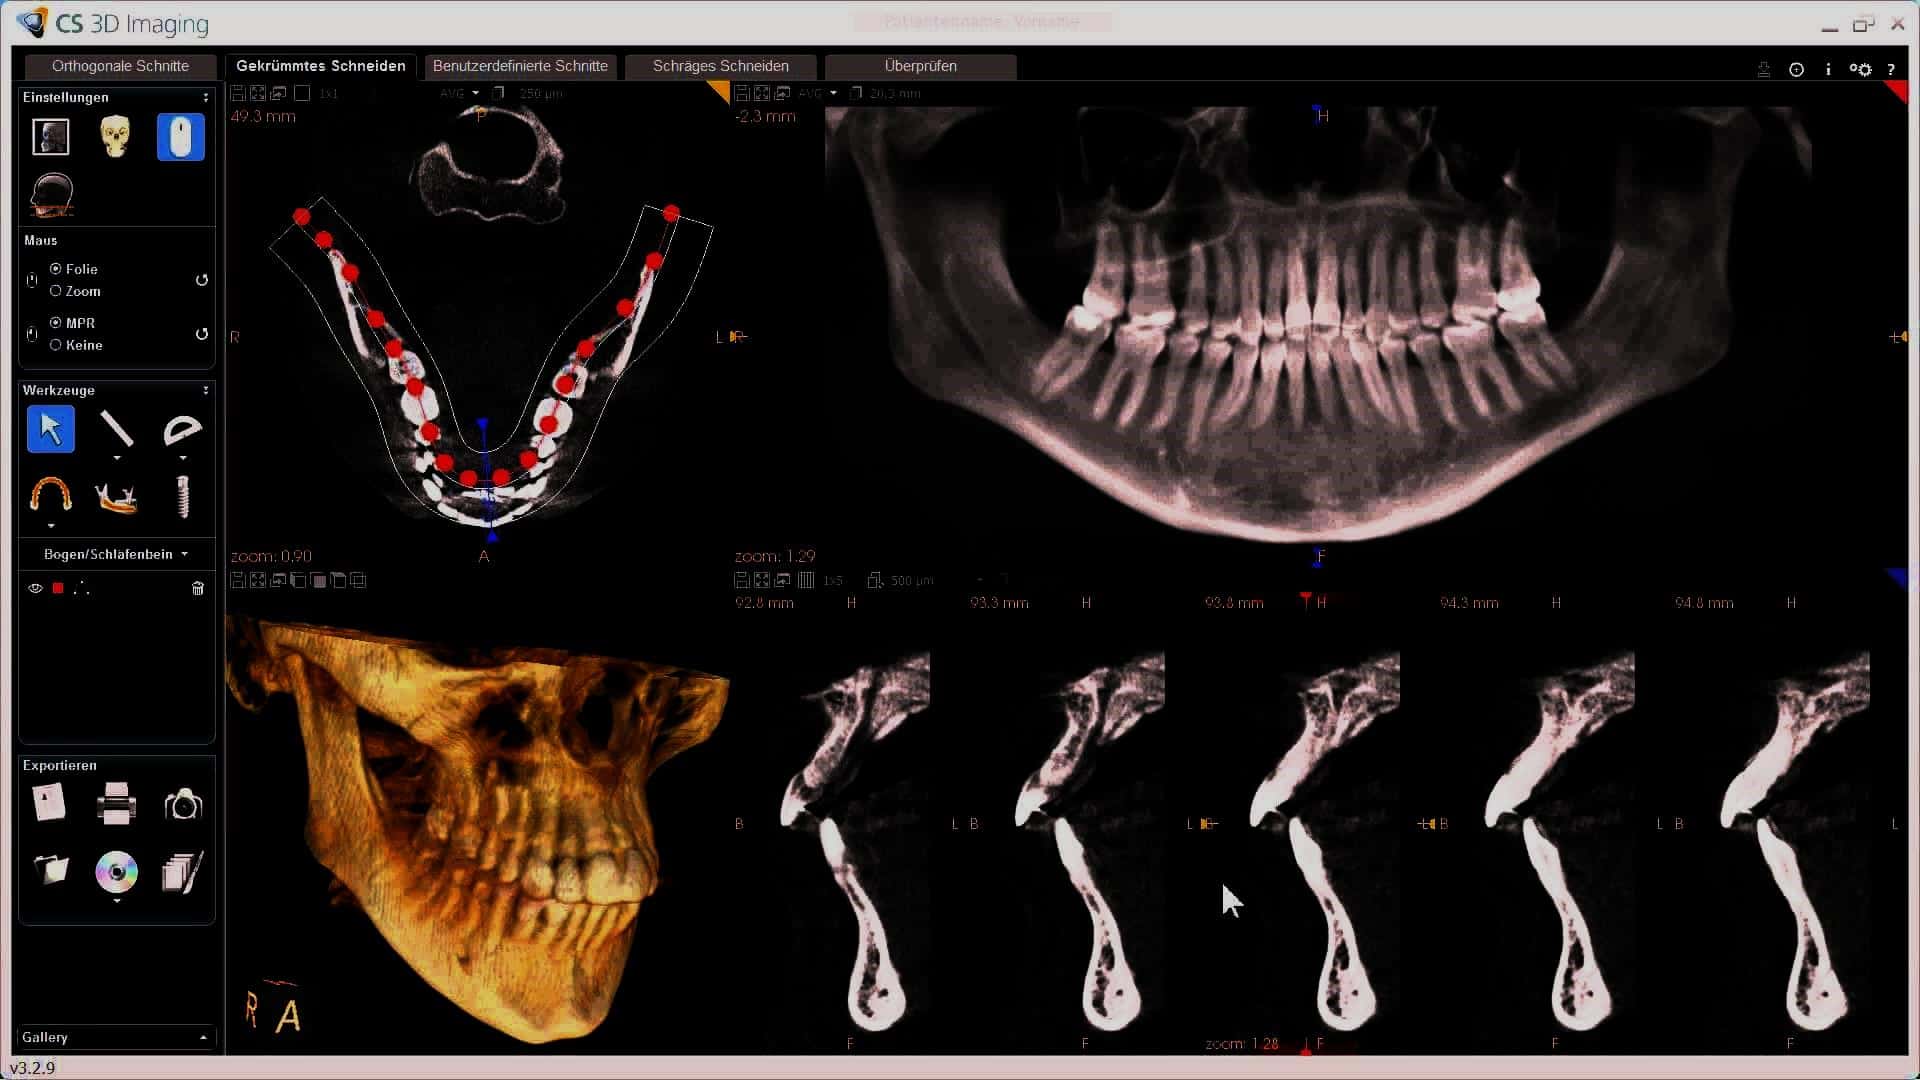 نوعية العظم السنخي Alveolar Bone Quality وأهميتها في علم زرع الأسنان